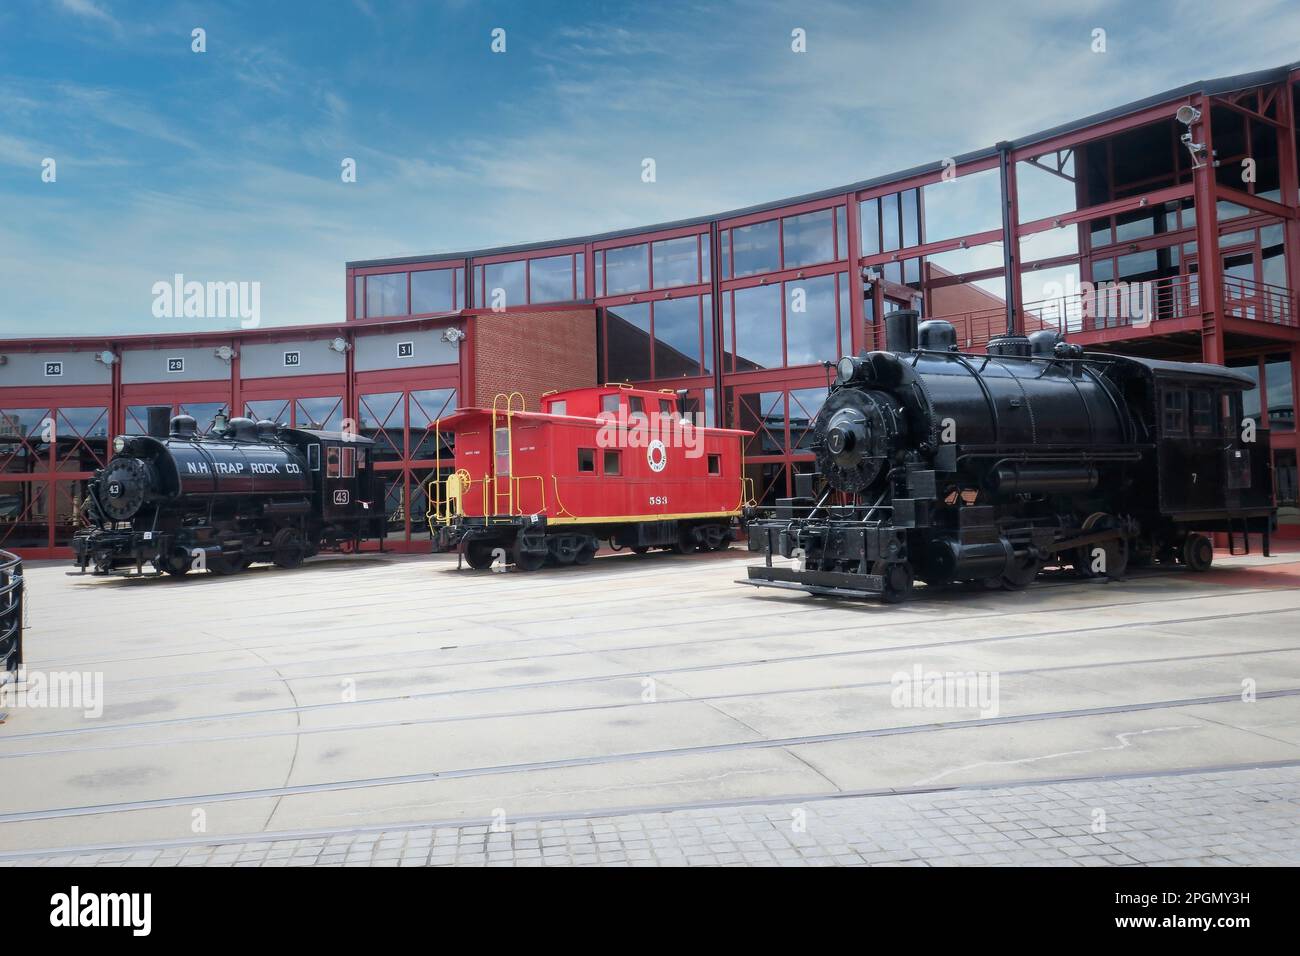 Locomotive a vapore restaurate e un caboose rosso visto al parco storico nazionale di Steamtown in Scranton Pennsylvania Foto Stock